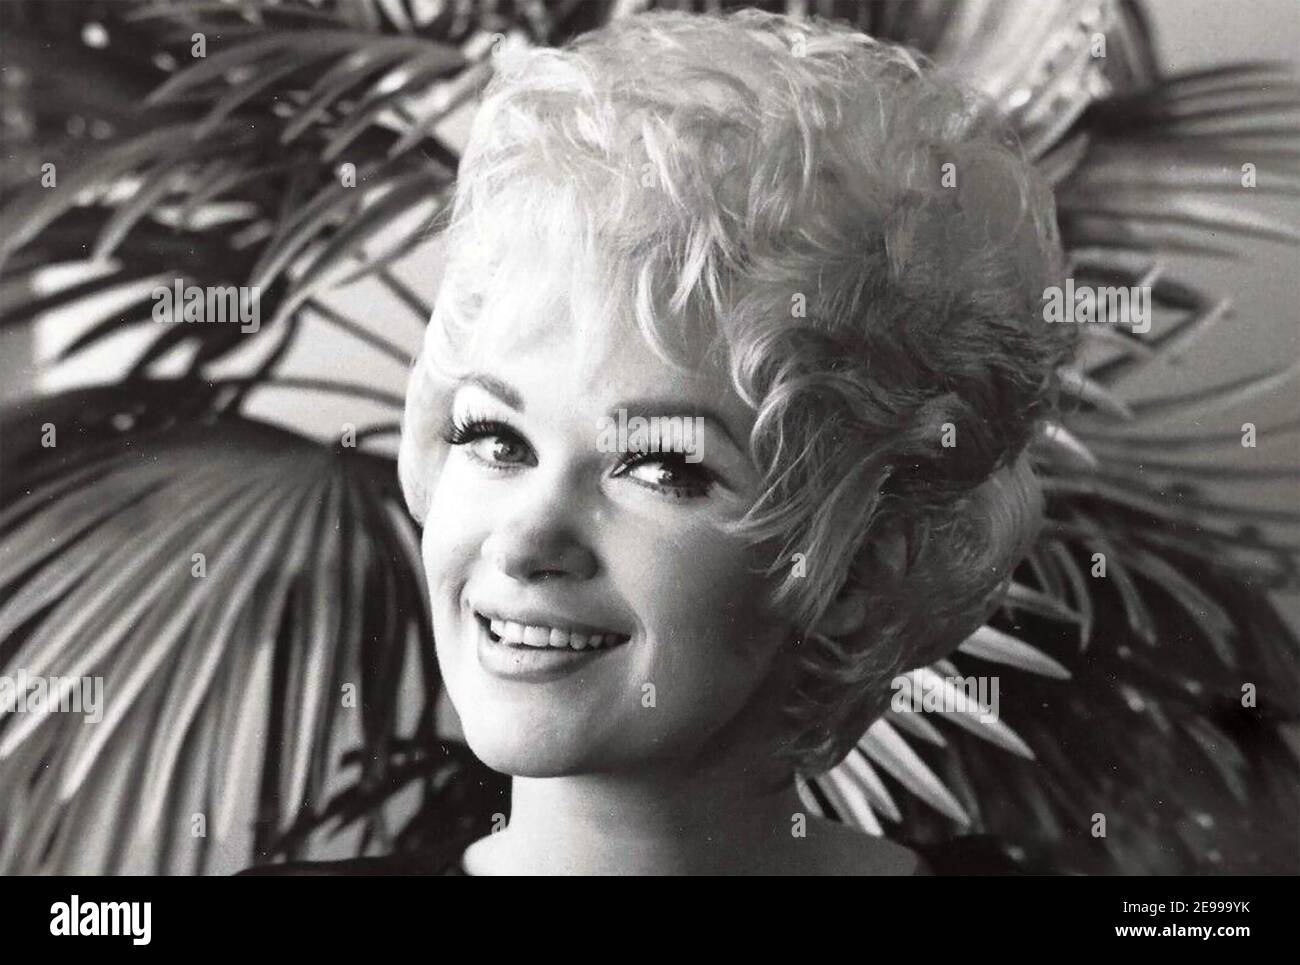 SUE RANEY Foto promocional de la cantante de jazz estadounidense nacida en 1939 Foto de stock